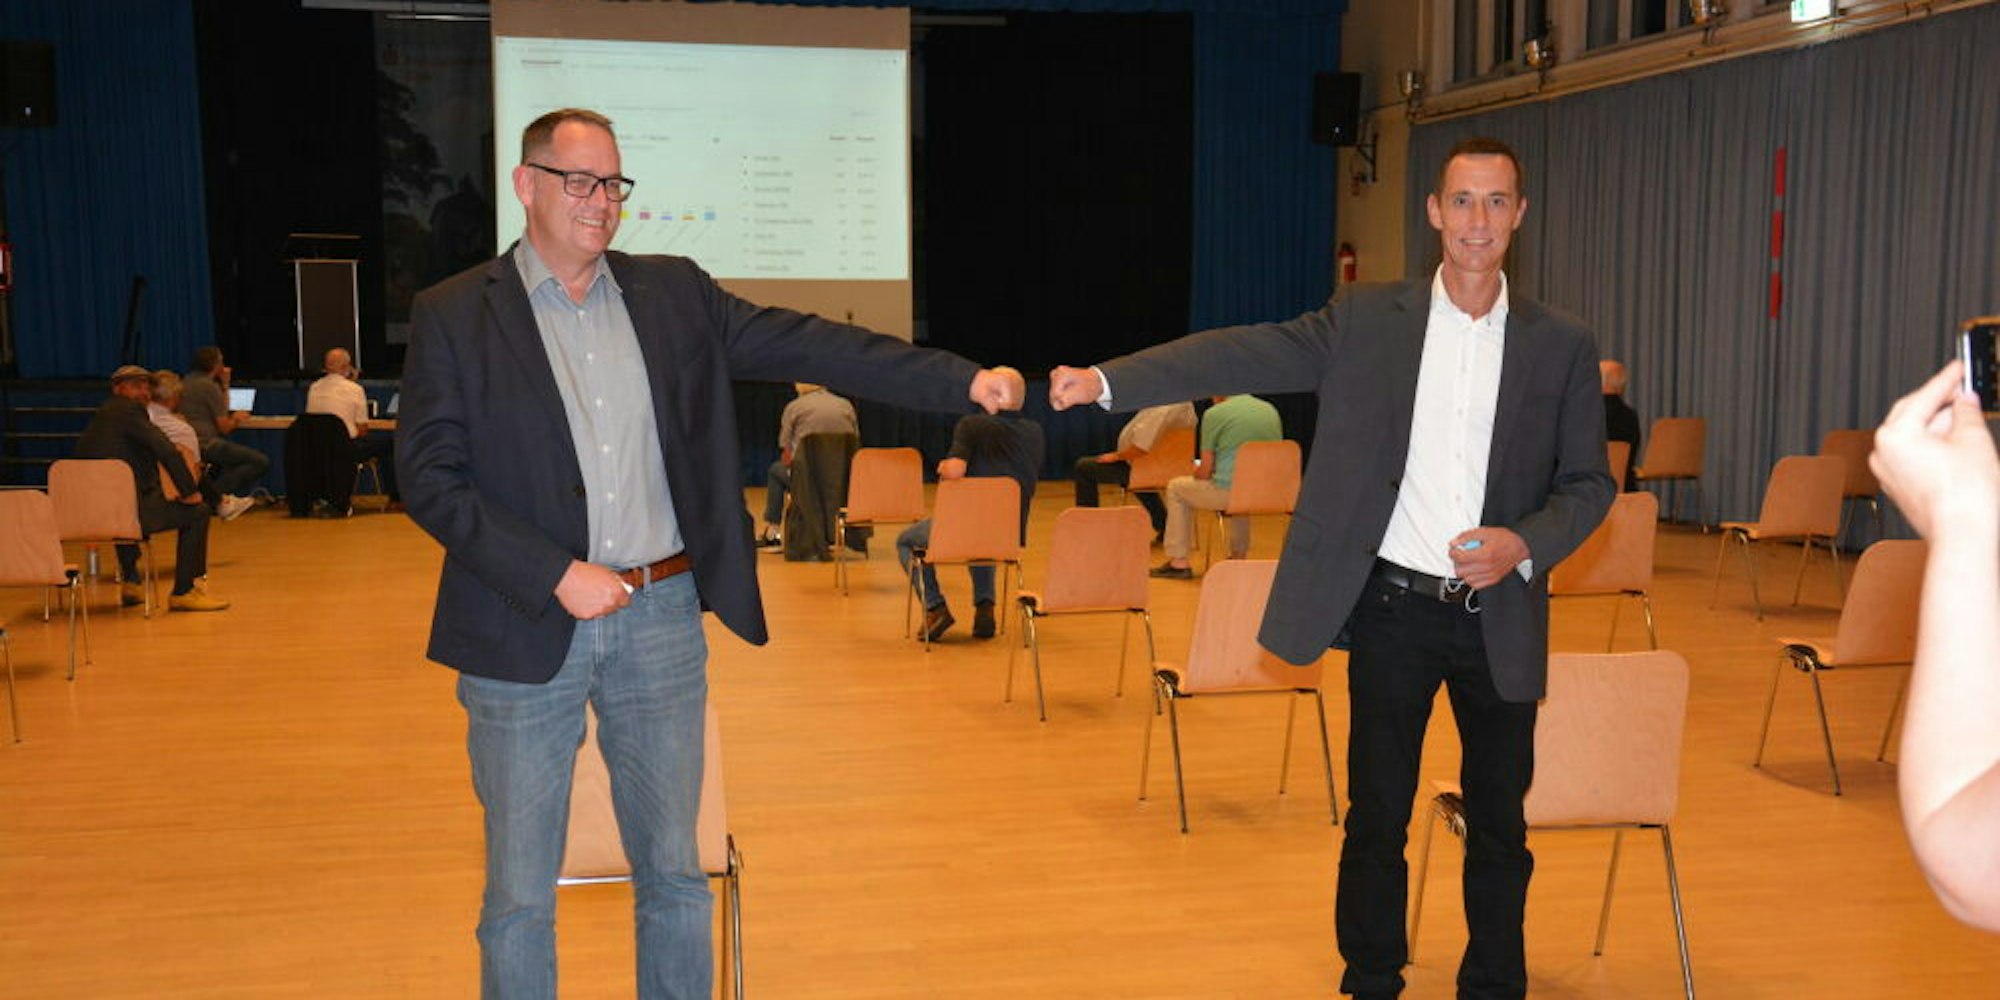 Dieter Spürck (CDU) und Andreas Lipp (SPD) (v.r.) kommen in die Stichwahl für das Bürgermeisteramt. In der Jahnhalle hielt sich der Andrang der Bürger bei der Präsentation der Wahlergebnisse in Grenzen.